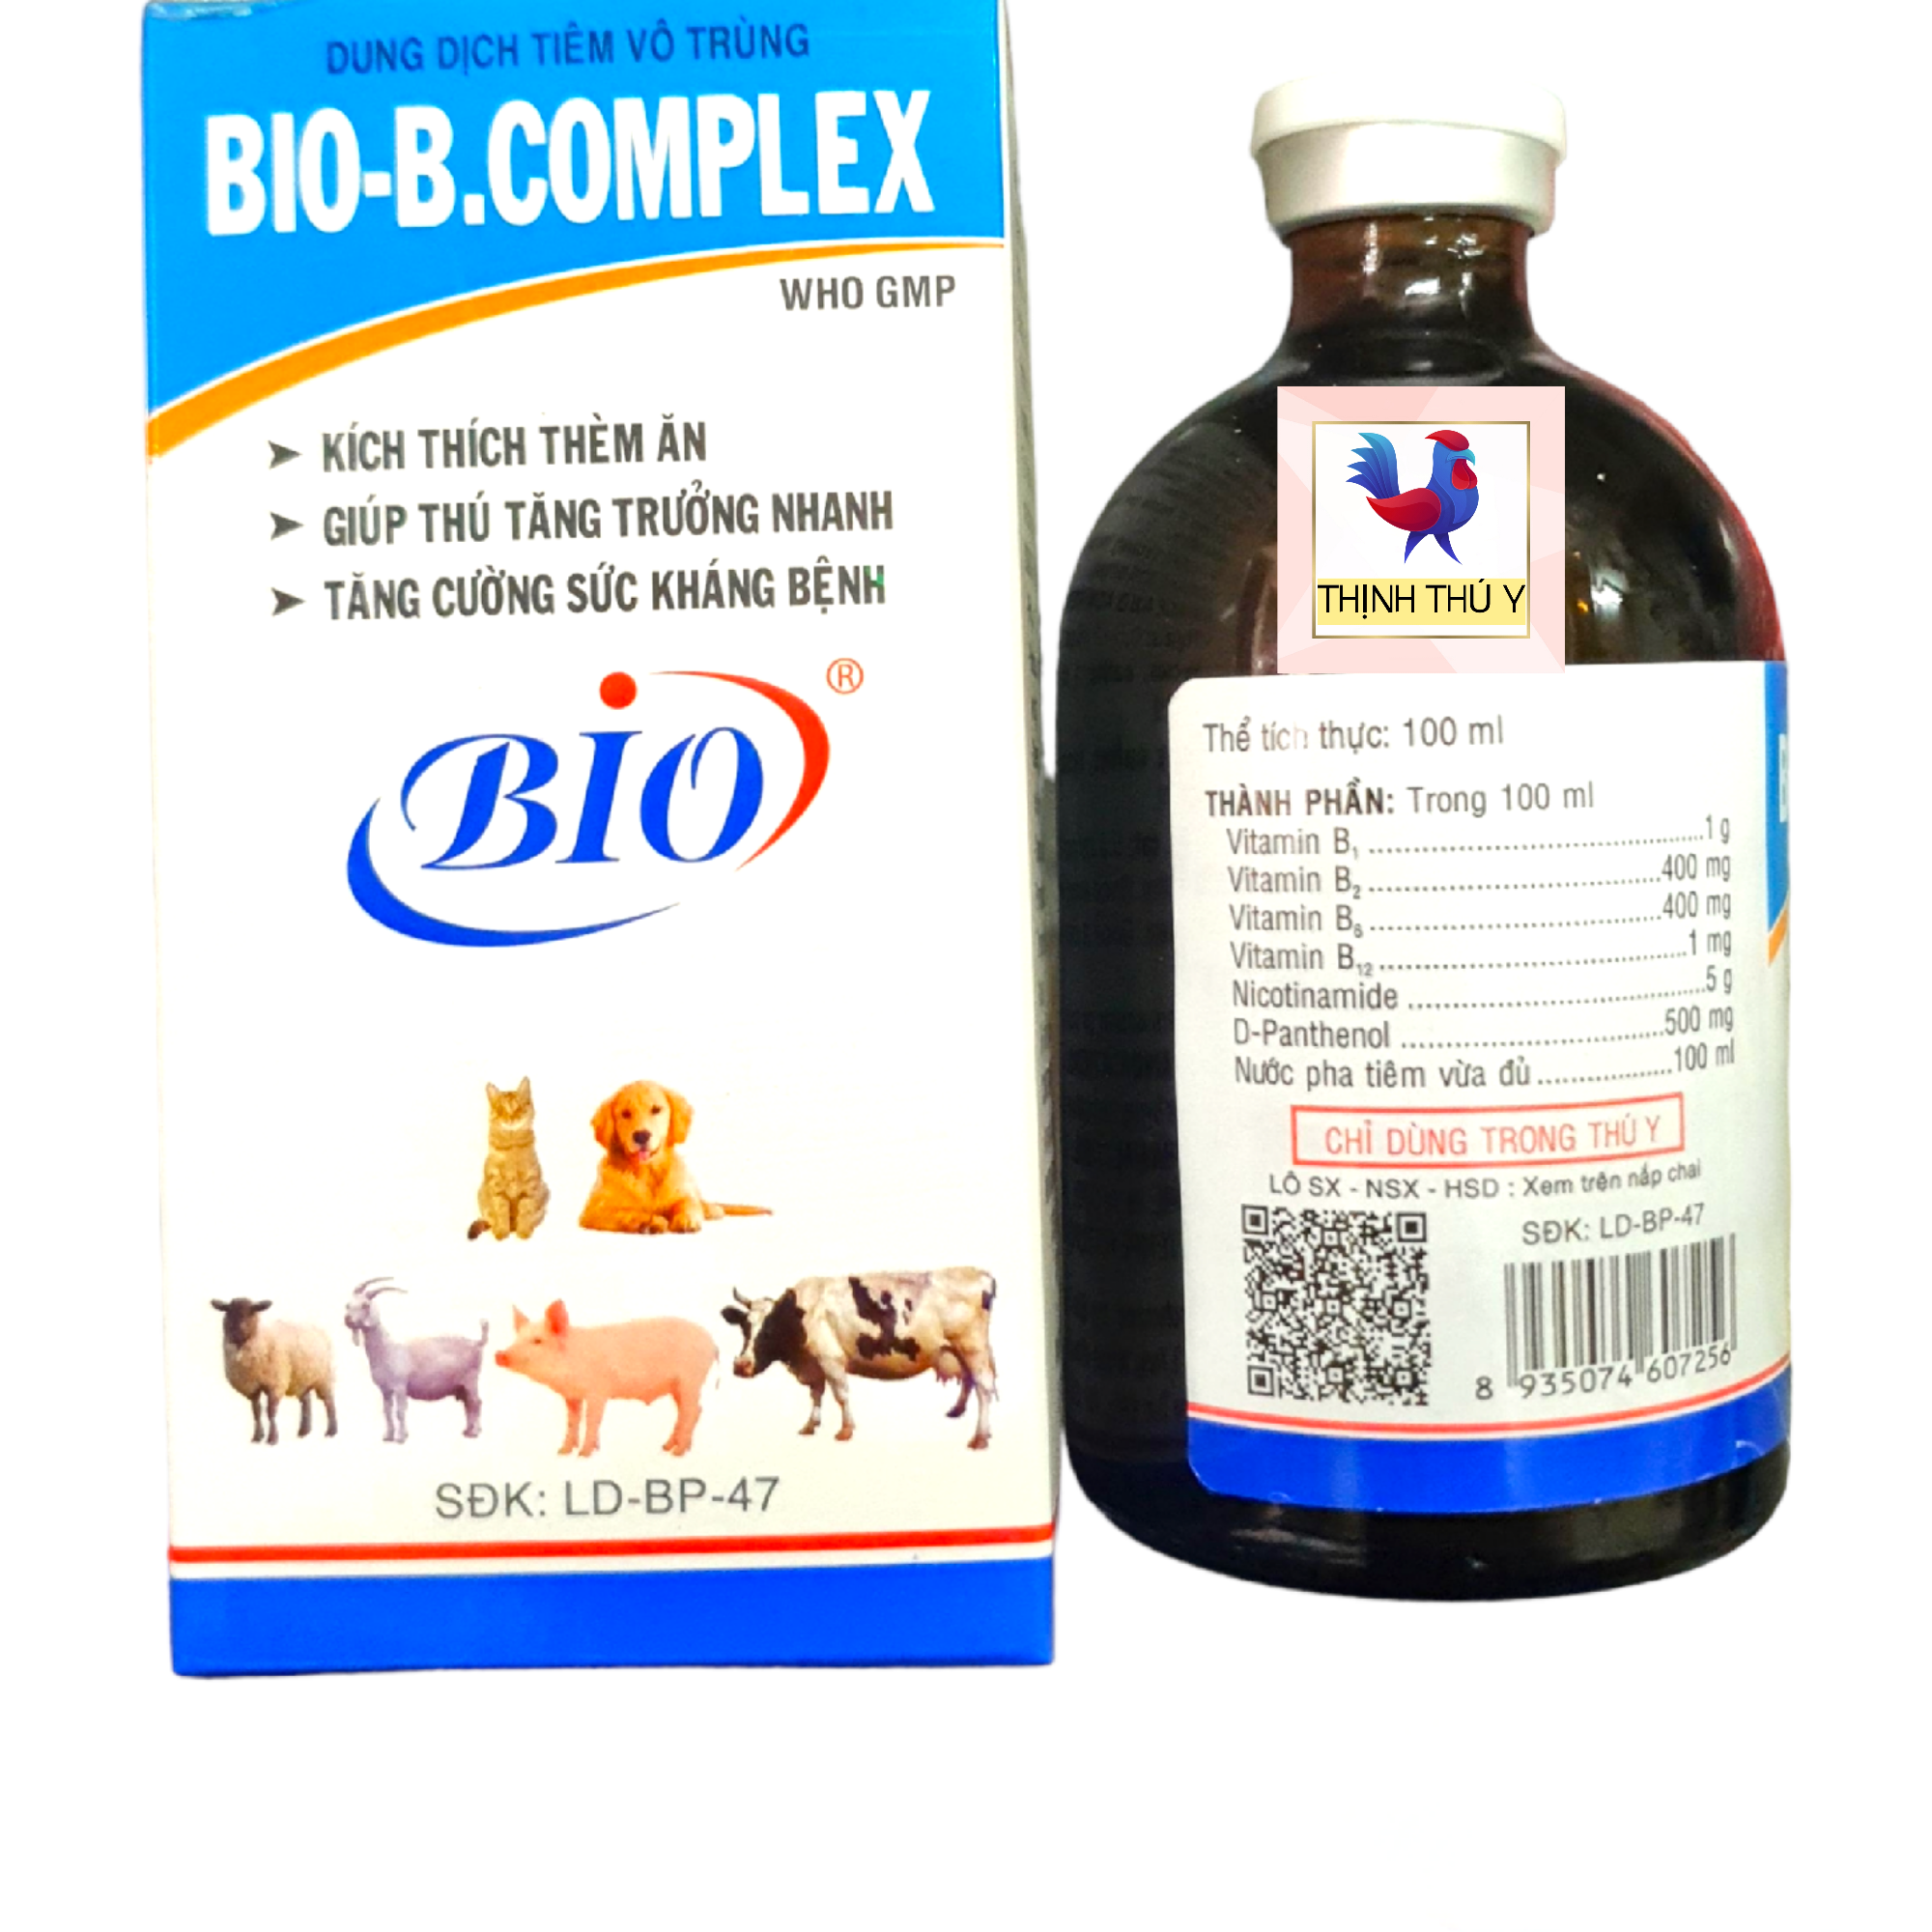 Bio B COMPLEX (100ml) - Kích thích thèm ăn, tăng trưởng nhanh cho gà vịt, chó mèo, heo, bò